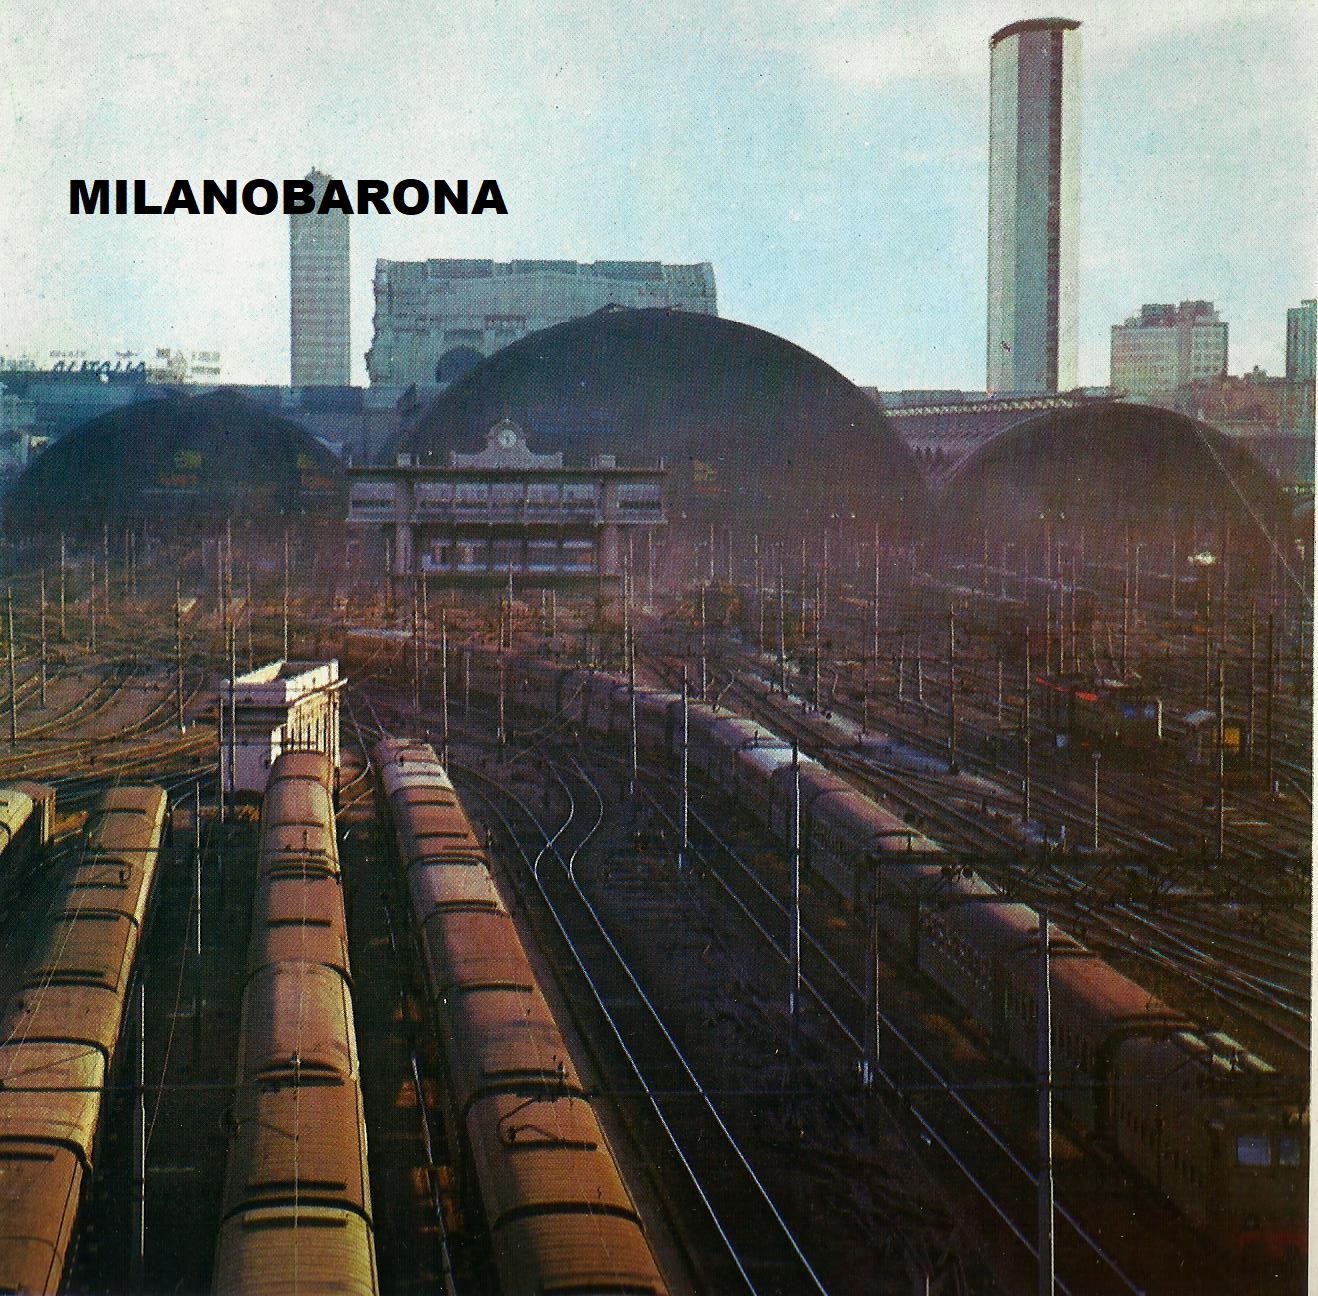 Scalo Ferroviario di Milano Stazione Centrale, fine anni '60 del '900. Fonte: Enciclopedia della Scienza, ex Istituto Geografico De Agostini, 1971/'73.